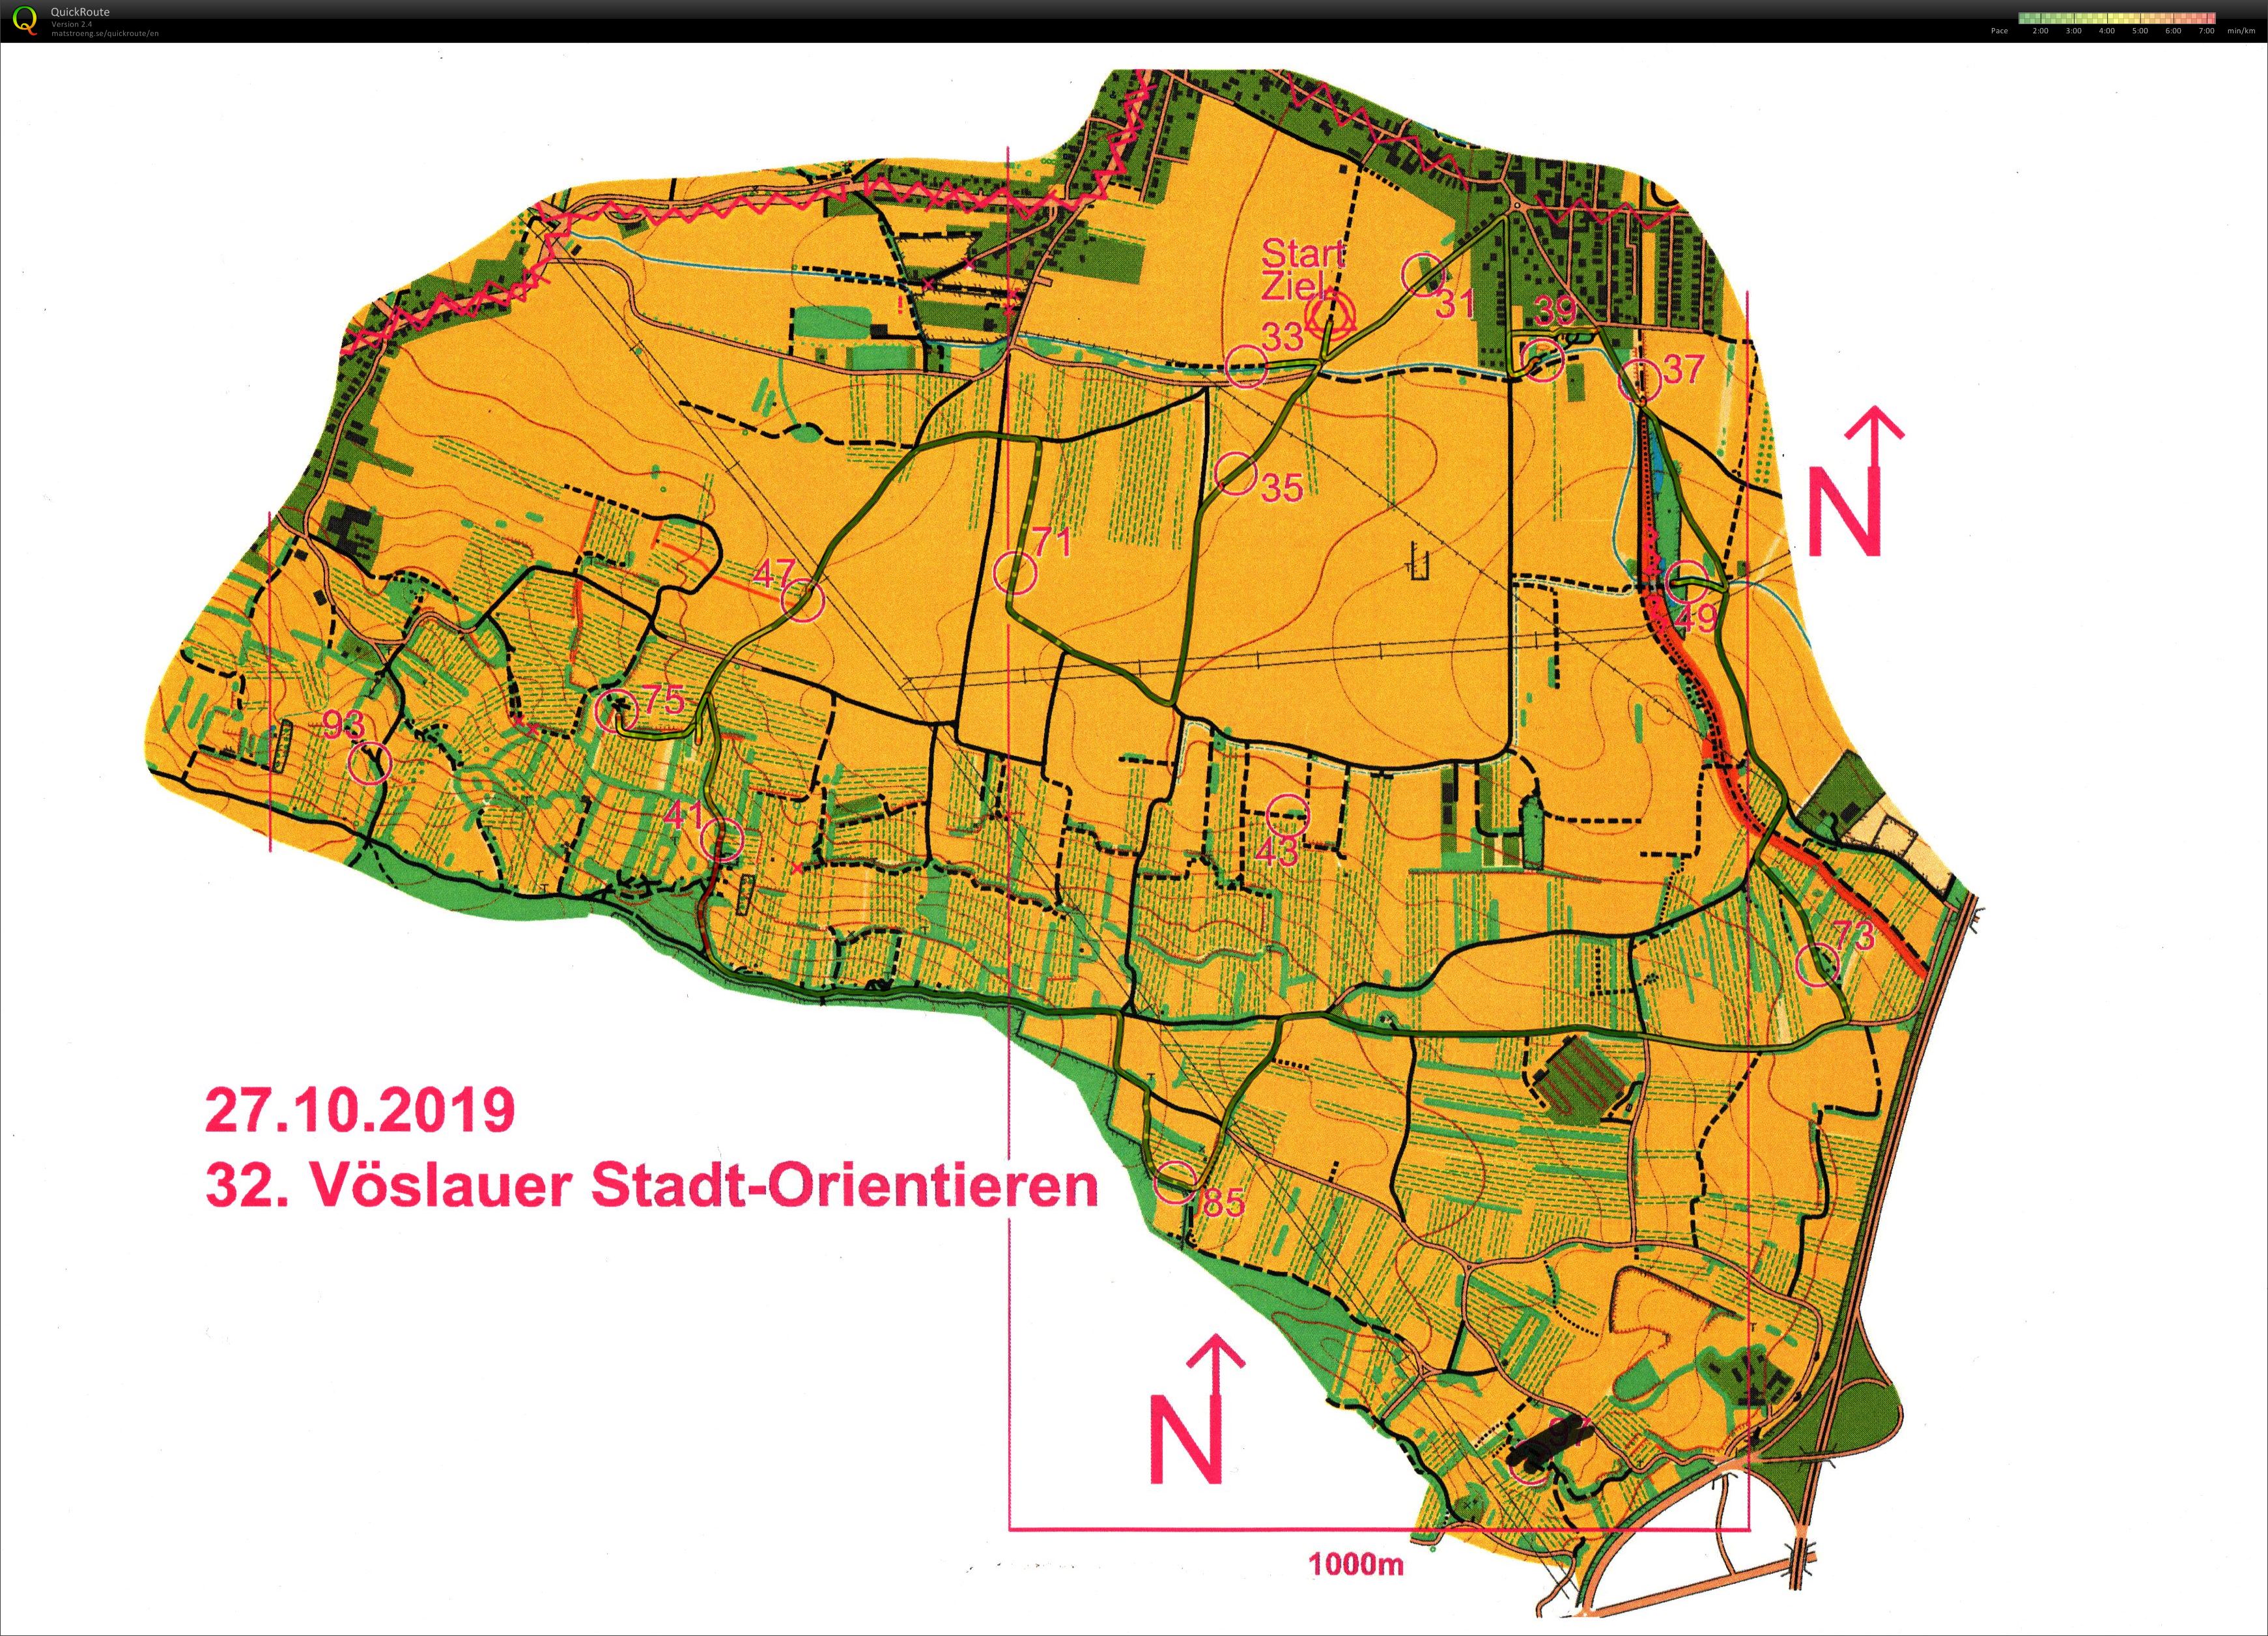 Vöslauer Stadt-Orientieren (27-10-2019)